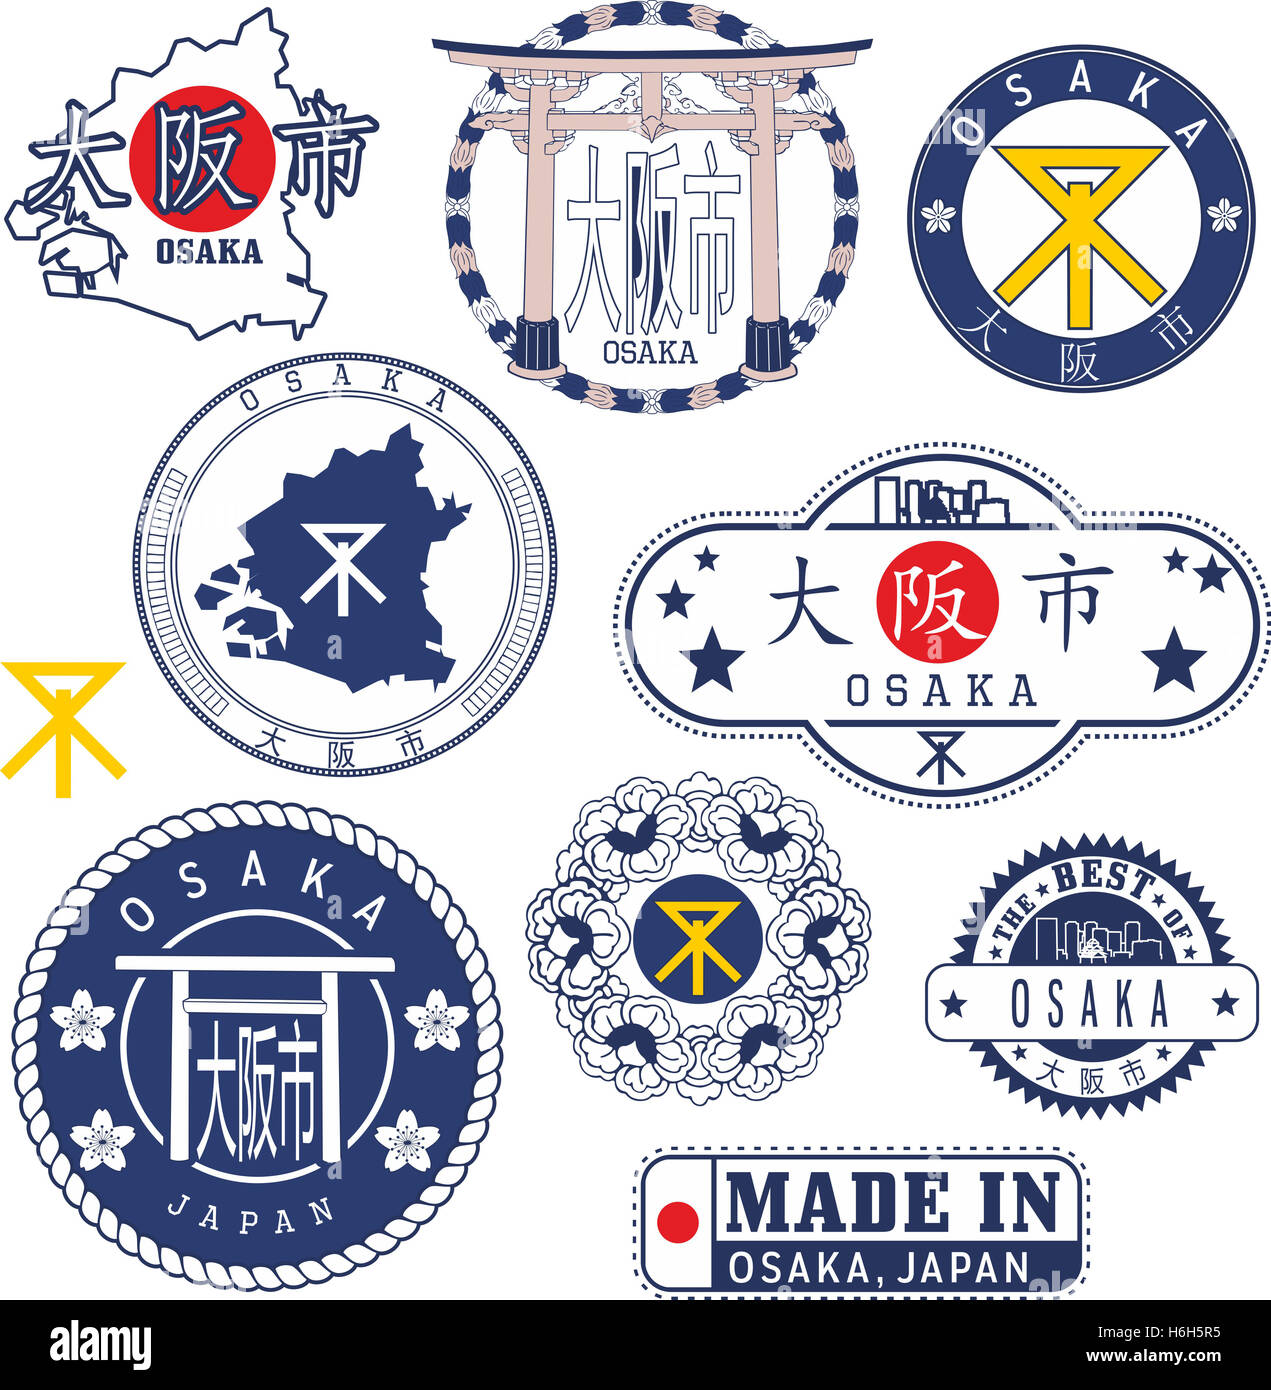 Ville d'Osaka, au Japon. Ensemble de timbres générique et signes y compris plan de ville, les éléments de l'emblème et le Japonais Osaka hiéroglyphe nom. Banque D'Images